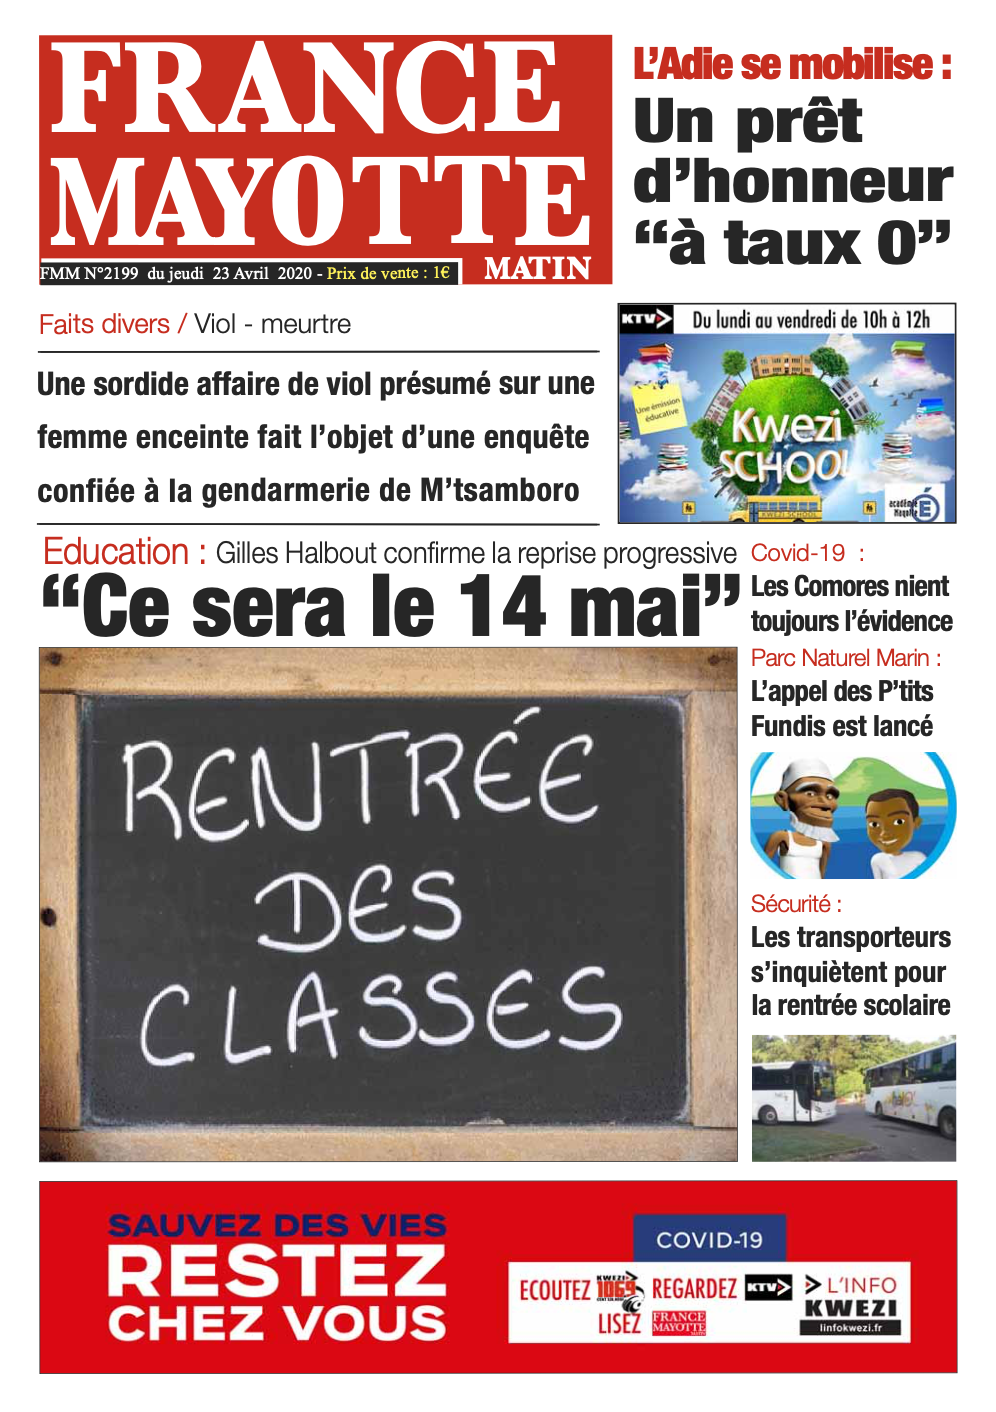 France Mayotte Jeudi 23 avril 2020